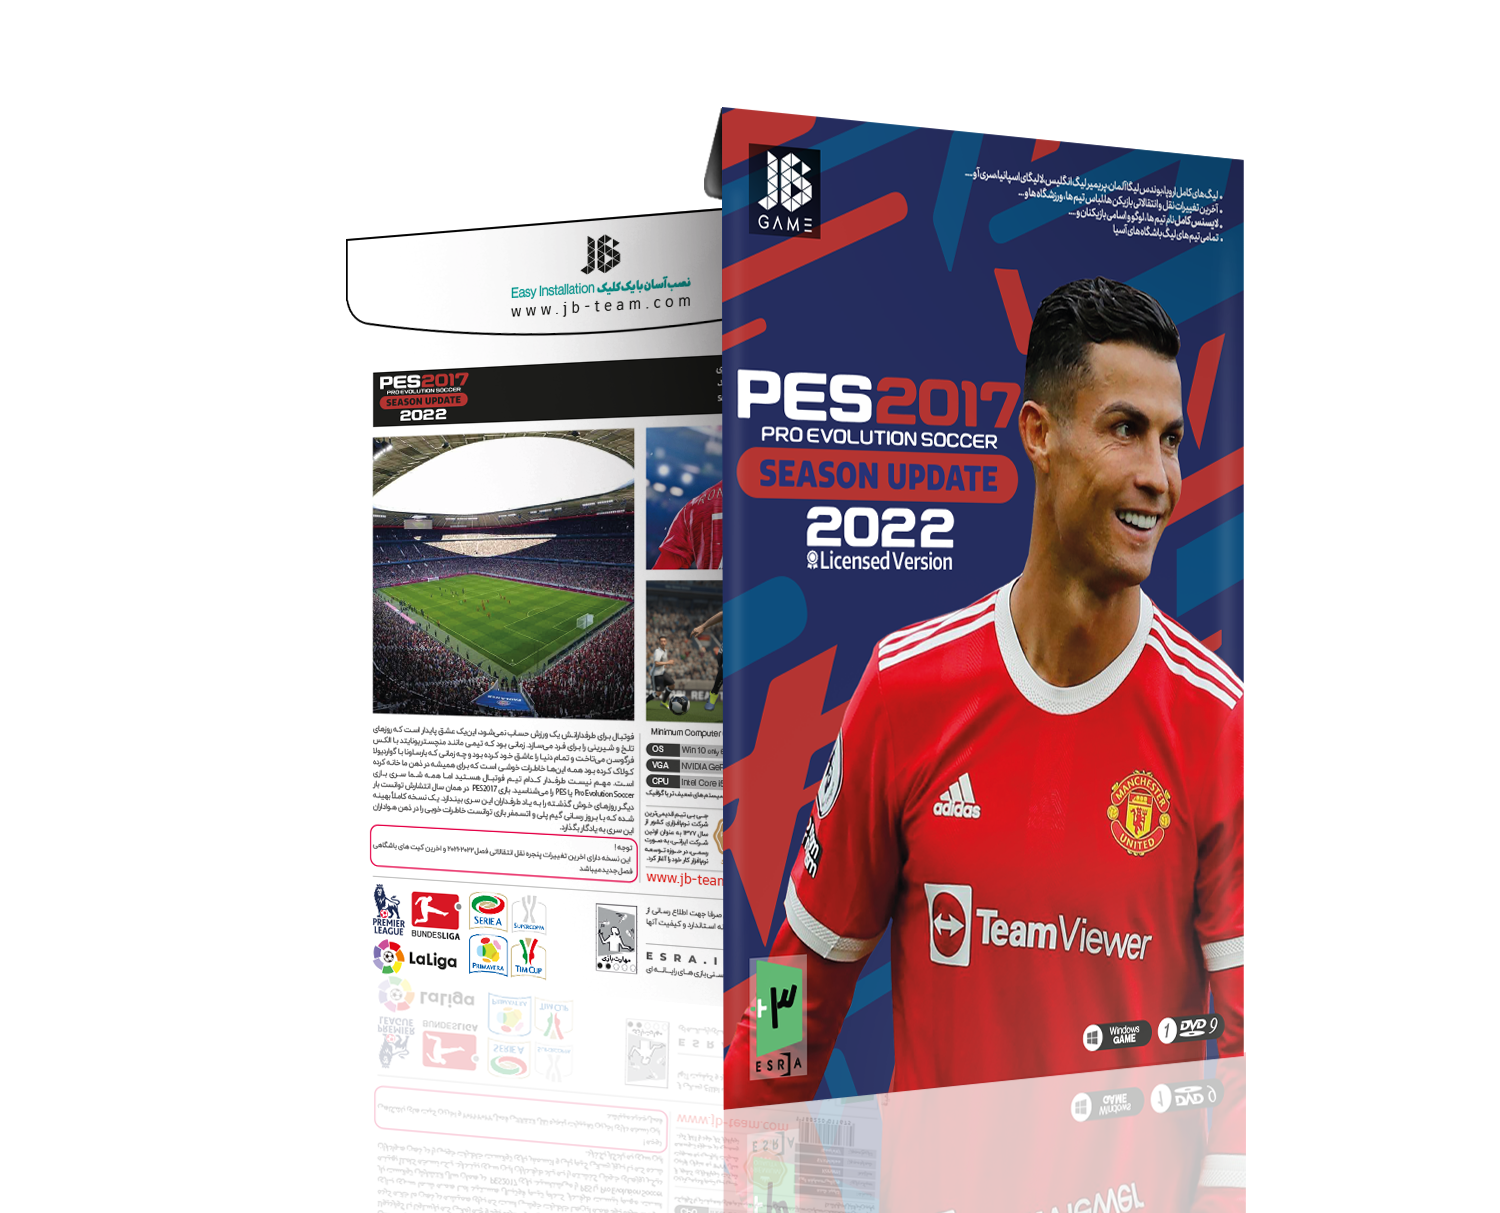 Pro Evolution Soccer 2017 بازی PES 2017 برای PC